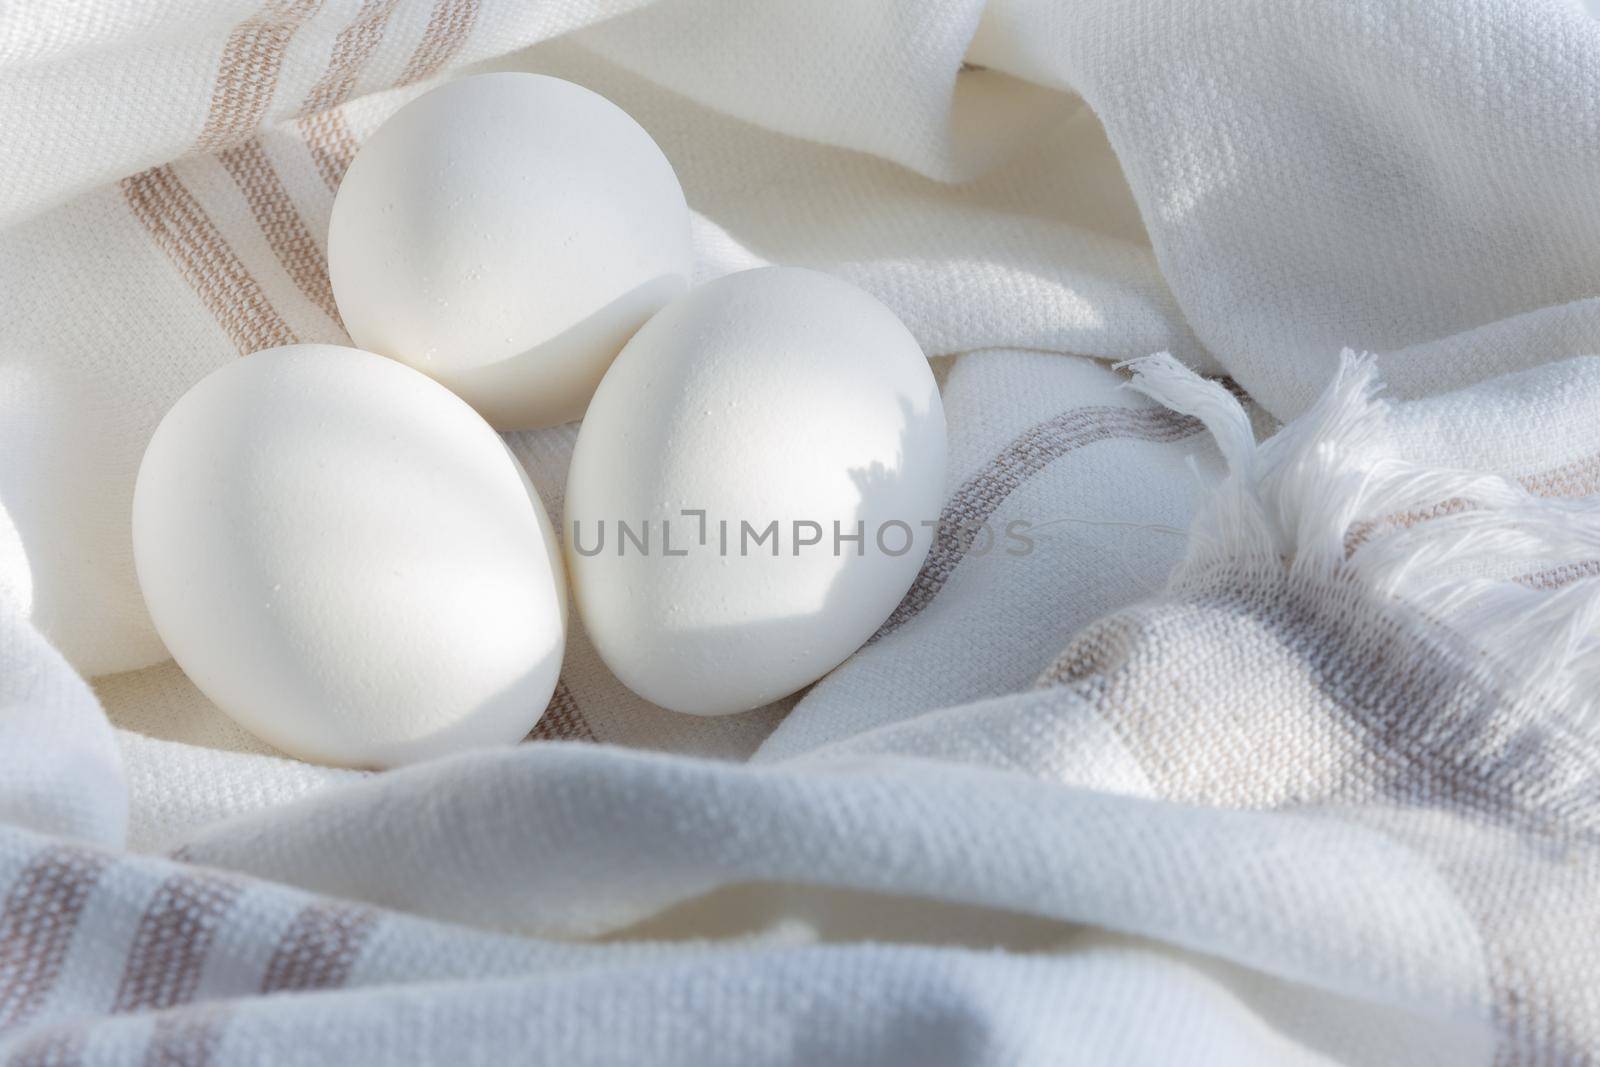 Fresh chicken eggs on a linen towel under a soft sunlight. Scandinavian rustic style.